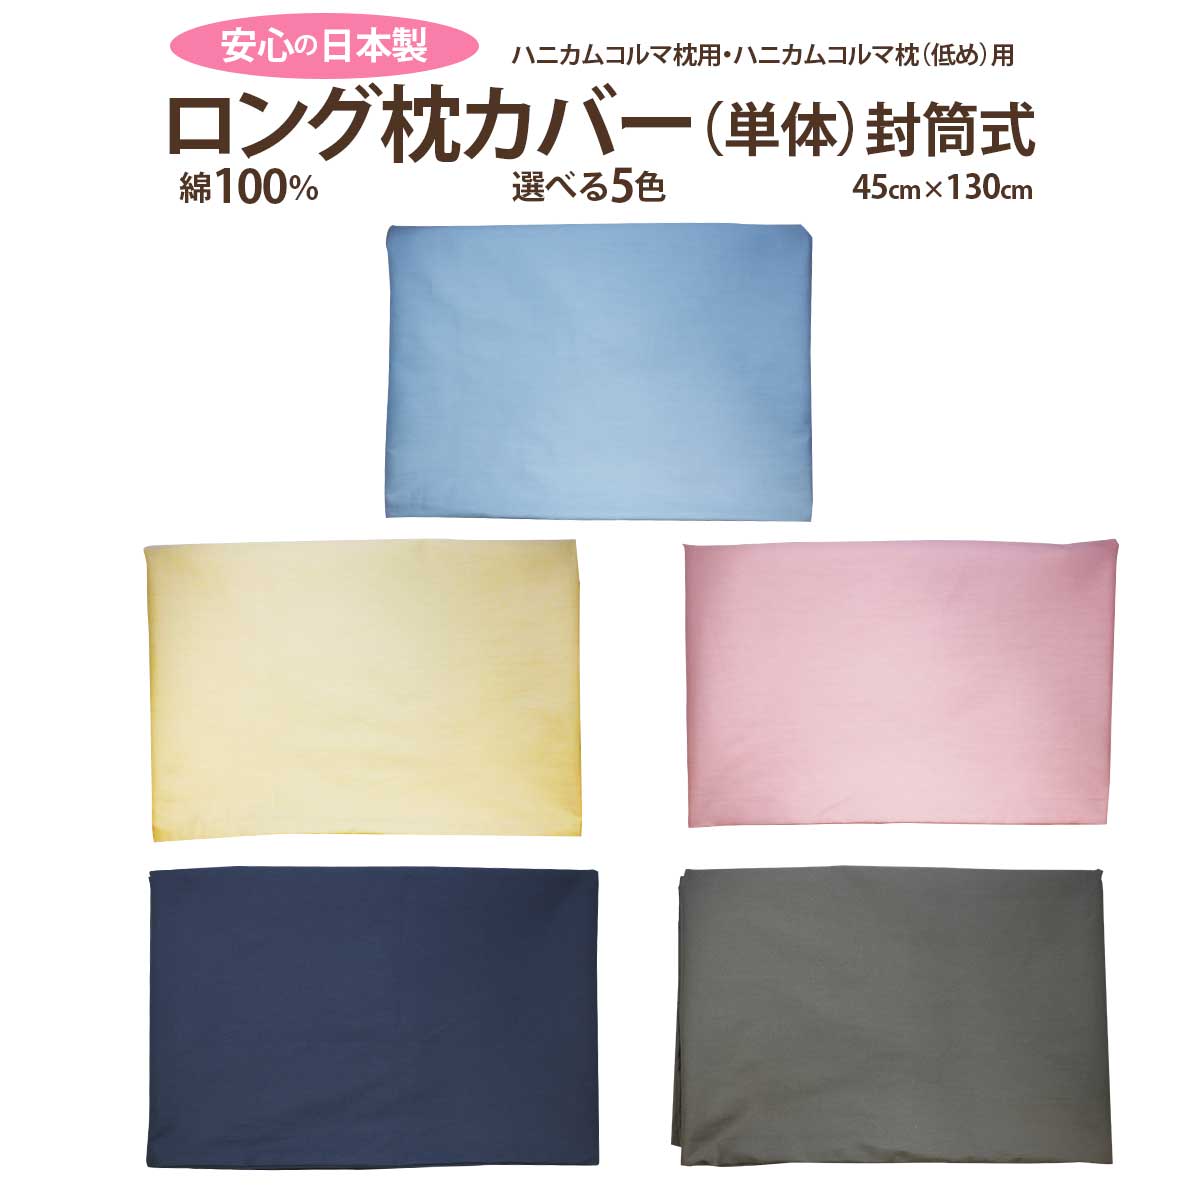 スーパーホテル客室備え付けのオリジナル枕「ハニカムコルマ枕・ハニカムコルマ枕（低め）」専用としてお作りした枕カバーです。 ホテルの客室では、白色カバーを使用しておりますが、ご自宅用としてお使い頂く為に、5色のカラーの枕カバーを新たに作成しました。こちらも品質にごだわった日本製です。 サイズ：45x130cm 色：ブルー・ピンク・ベージュ・ネイビー・デザートグレー ※デザートグレーは、緑がかったグレーです。 素材：コットン（綿）100％ ホテル仕様の封筒型（長い部分を内側に折り込むタイプ） 安心の日本製（愛知県） ※生地の製造段階で色付きの糸が混在する可能性、また、筋状の線(折り目)が入っている場合がありますが、汚れではございません。ご使用いただく上で品質には問題ありませんので、安心してご使用ください。 ※濡れたまま放置すると、白物に色移りすることがありますのでご注意ください。 枕カバー ハニカムコルマ枕専用 封筒型 商品詳細 ロング枕カバー 材質 コットン100％ サイズ 封筒型（端を中に折り込むタイプ）【長辺】130cm 【短辺】45cm 生産国 日本（愛知県） 注意事項 生地の製造段階で色付きの糸が混在する可能性、また、筋状の線(折り目)が入っている場合があります。